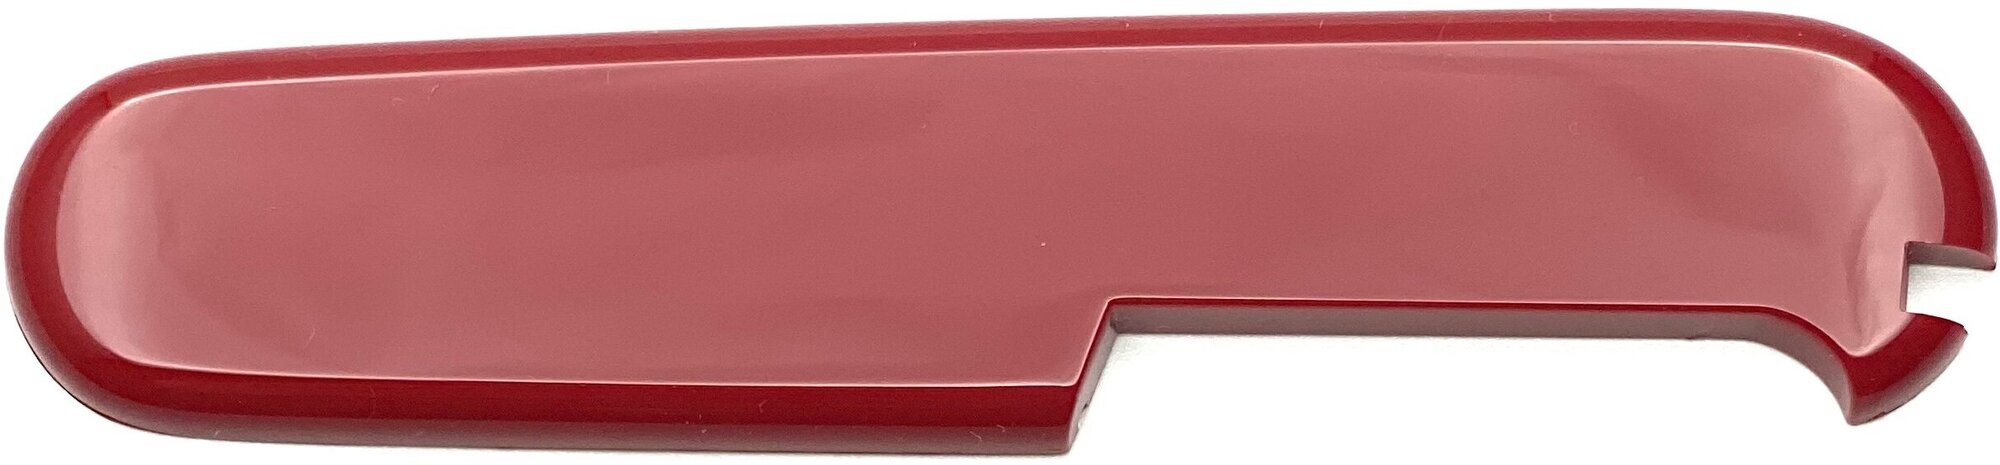 Задняя накладка для ножей VICTORINOX 91 мм, пластиковая красная